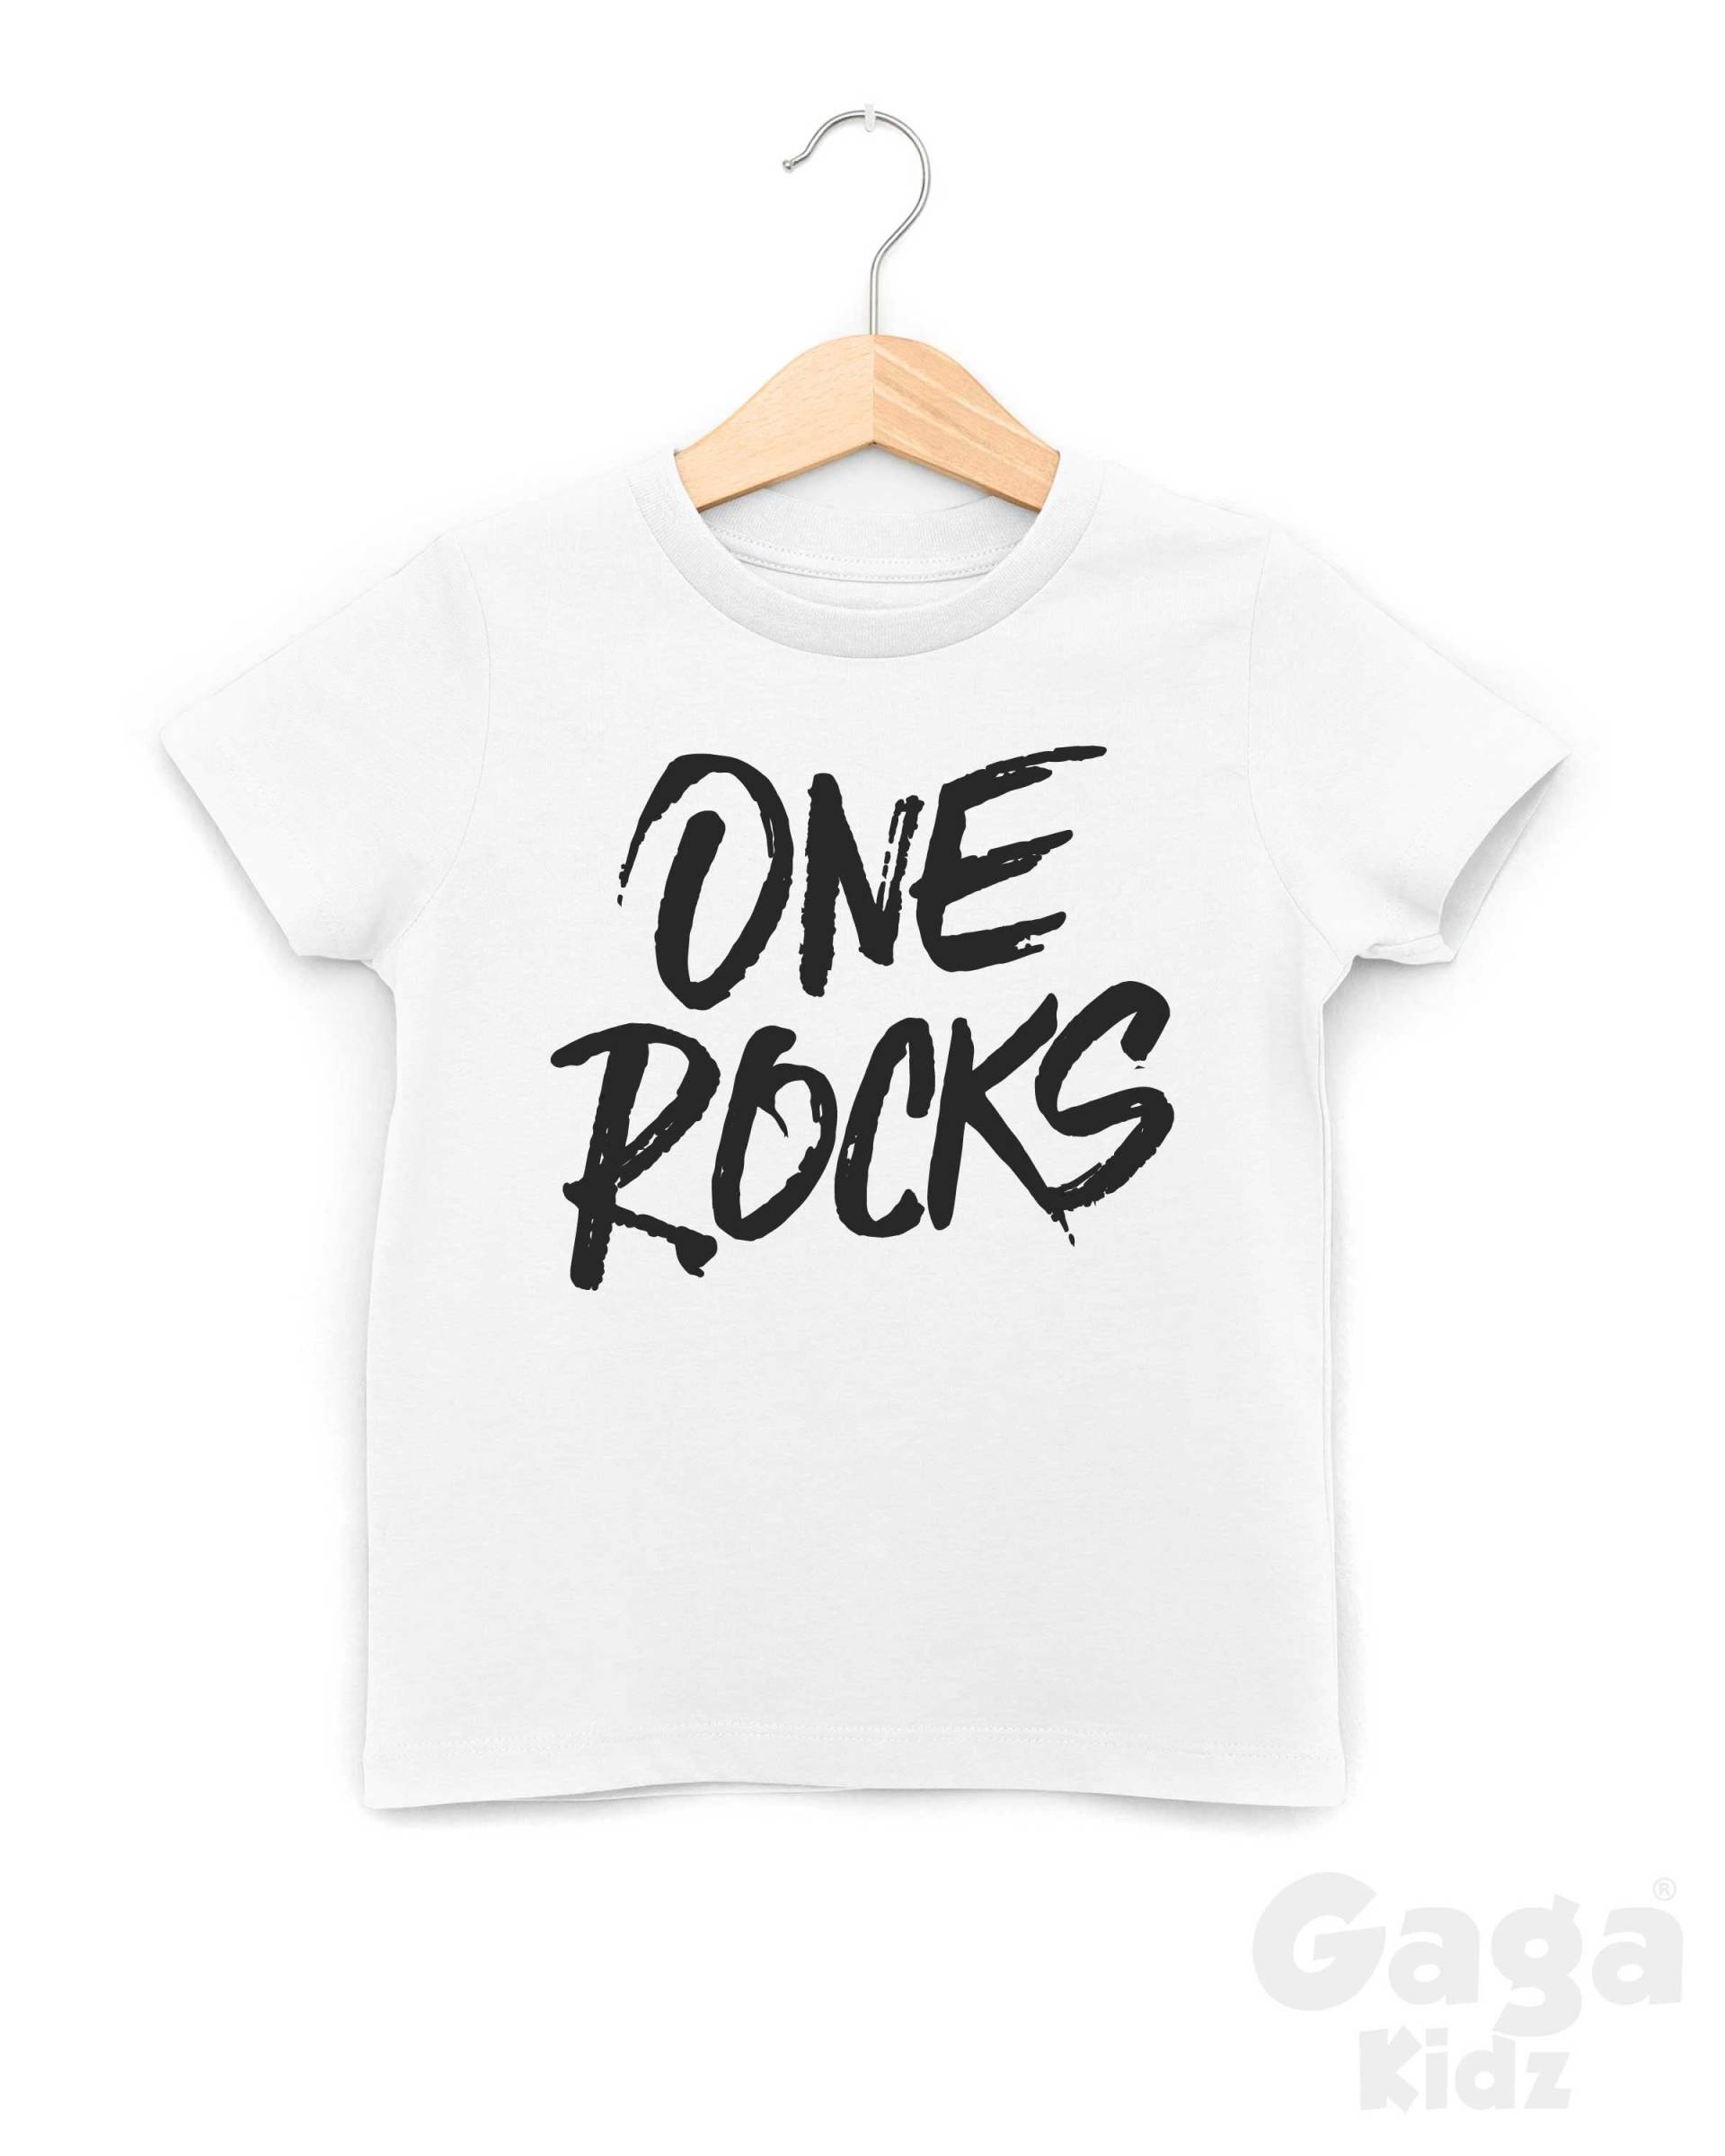 One Rocks Kinder T-Shirt, Wild & One, 1. Geburtstag Outfit von GagaKidz